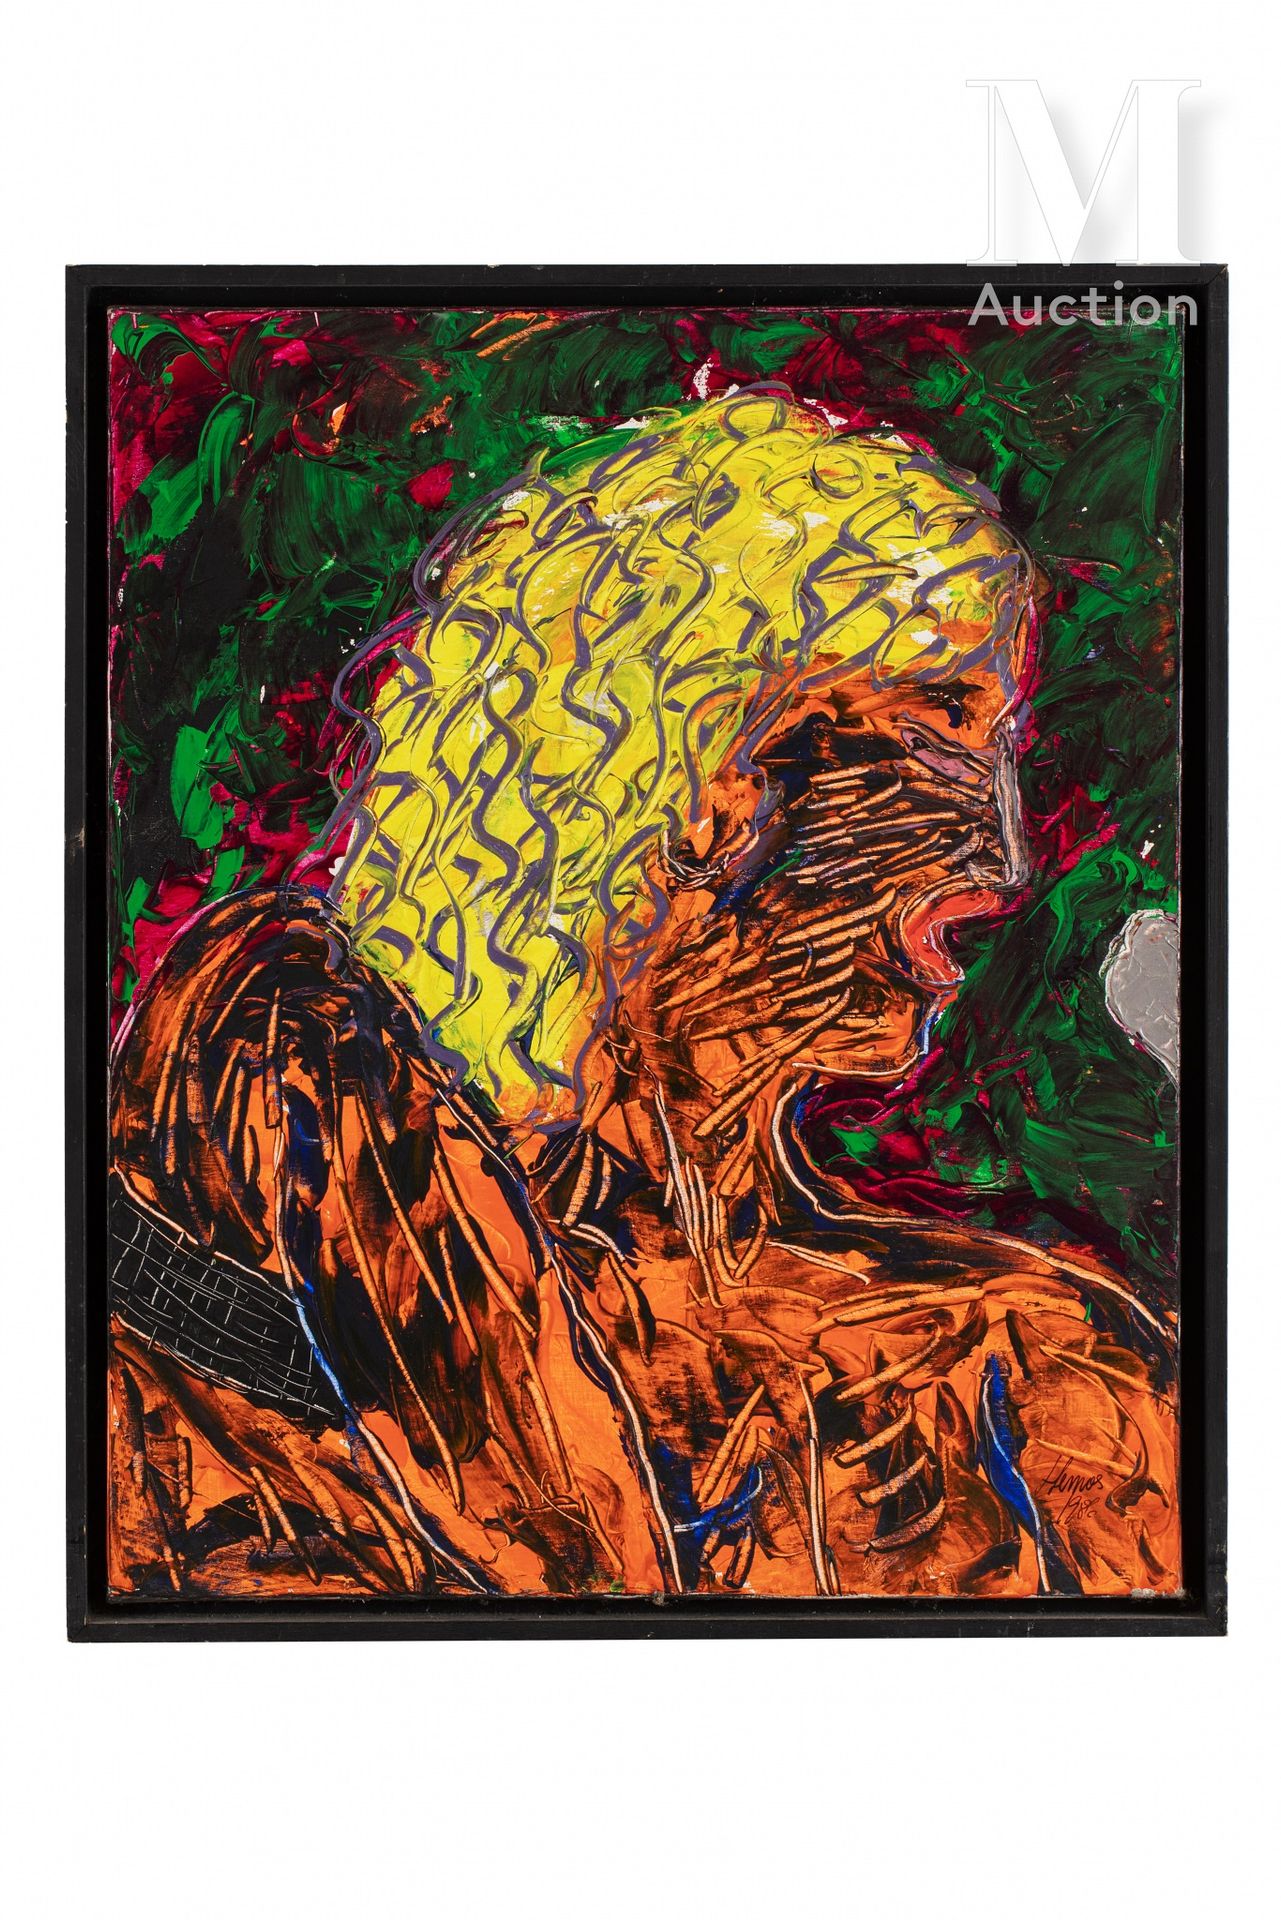 Luis LEMOS (né en 1954) 泪水》，1986年

丙烯酸画布，背面有签名和日期

65 x 54 cm



出处。

私人收藏，巴黎